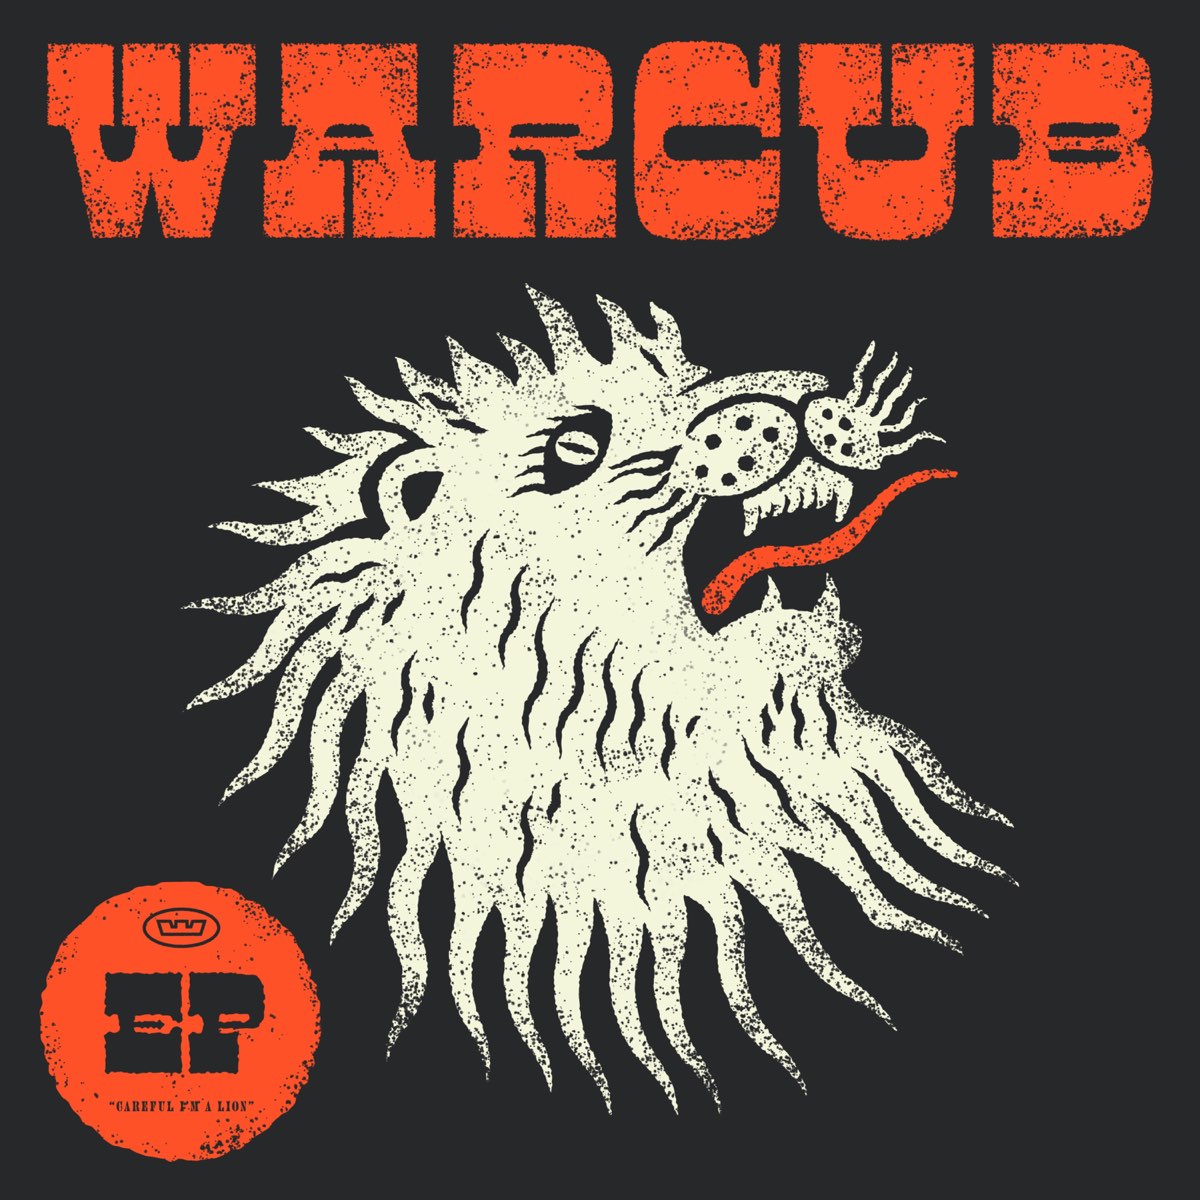 ‎Warcub - EP by Warcub on Apple Music